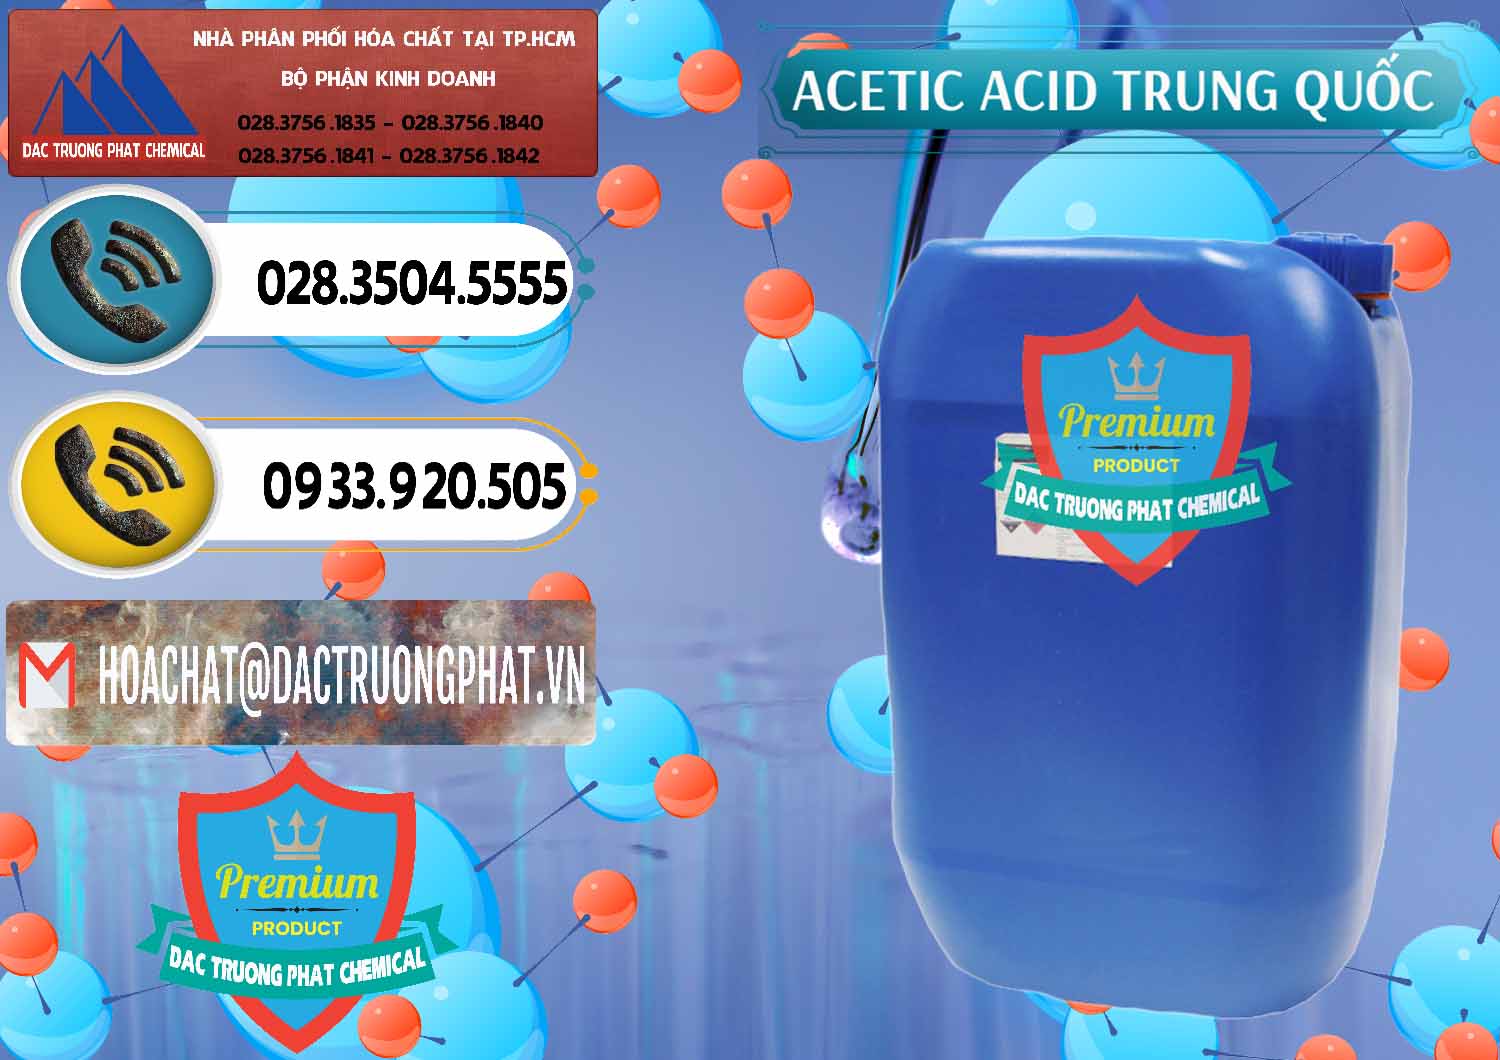 Cty chuyên cung ứng và bán Acetic Acid – Axit Acetic Trung Quốc China - 0358 - Cty cung cấp - phân phối hóa chất tại TP.HCM - hoachatdetnhuom.vn